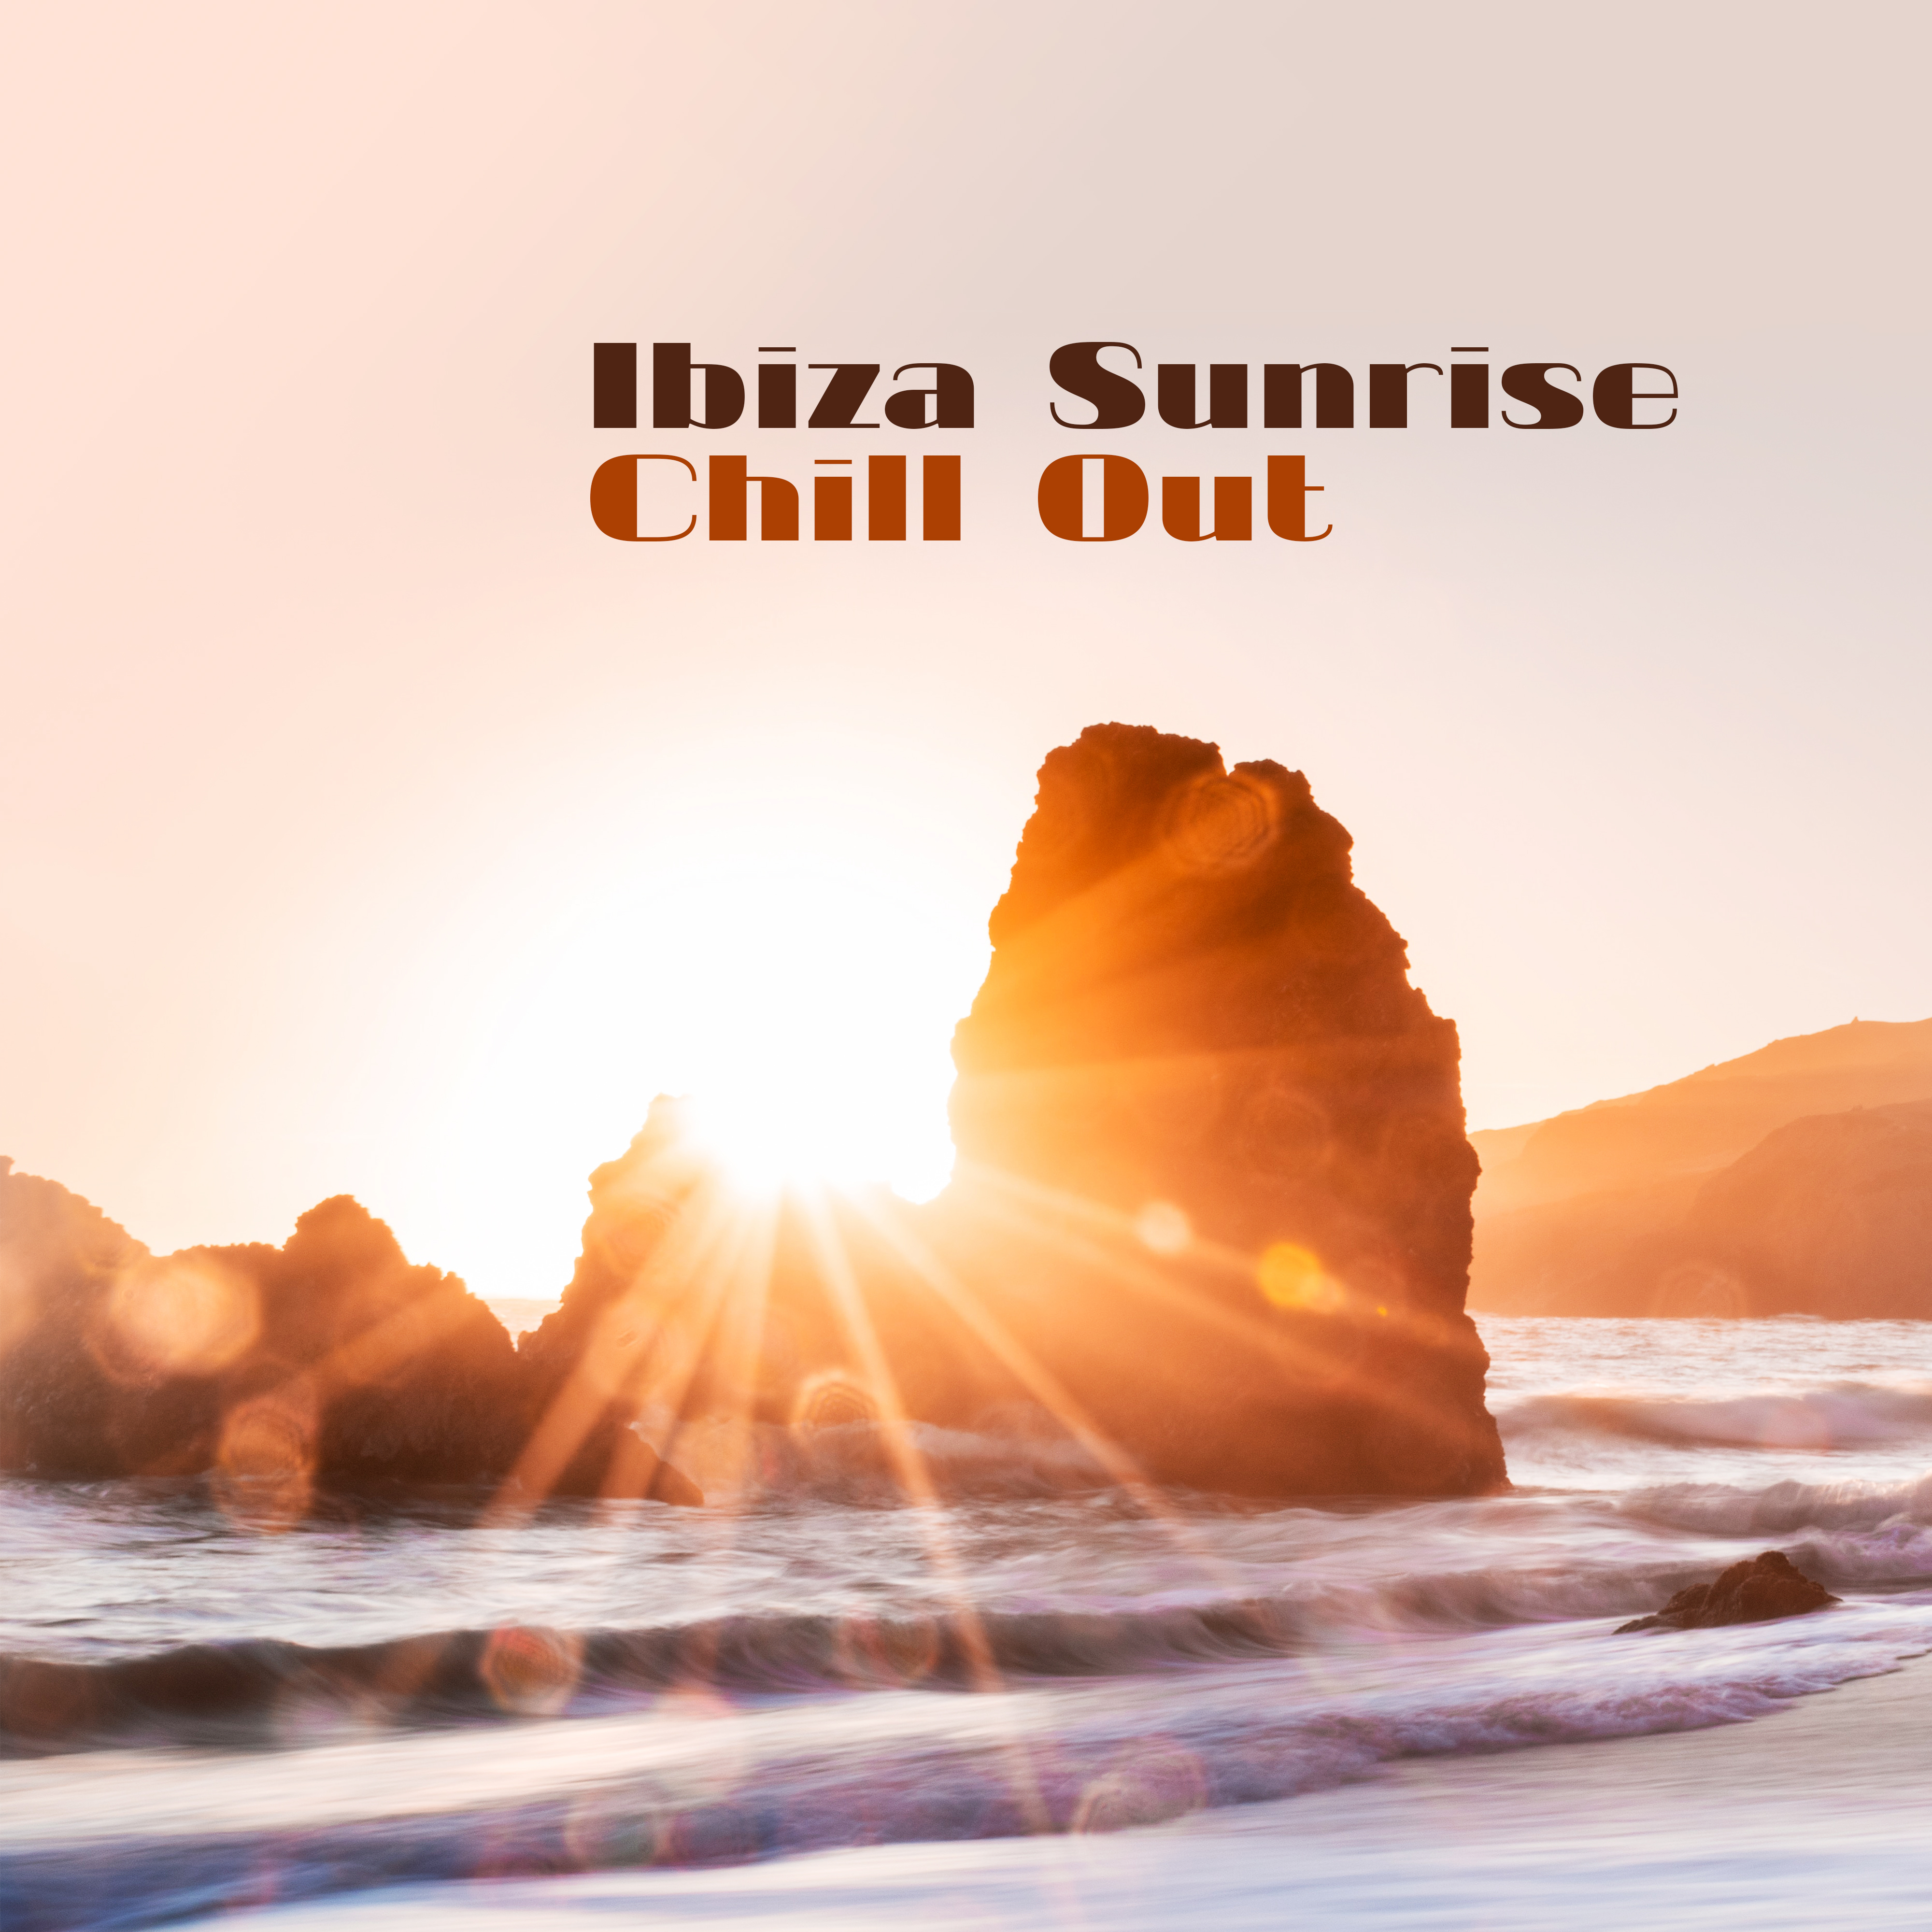 Ibiza Sunrise Chill Out